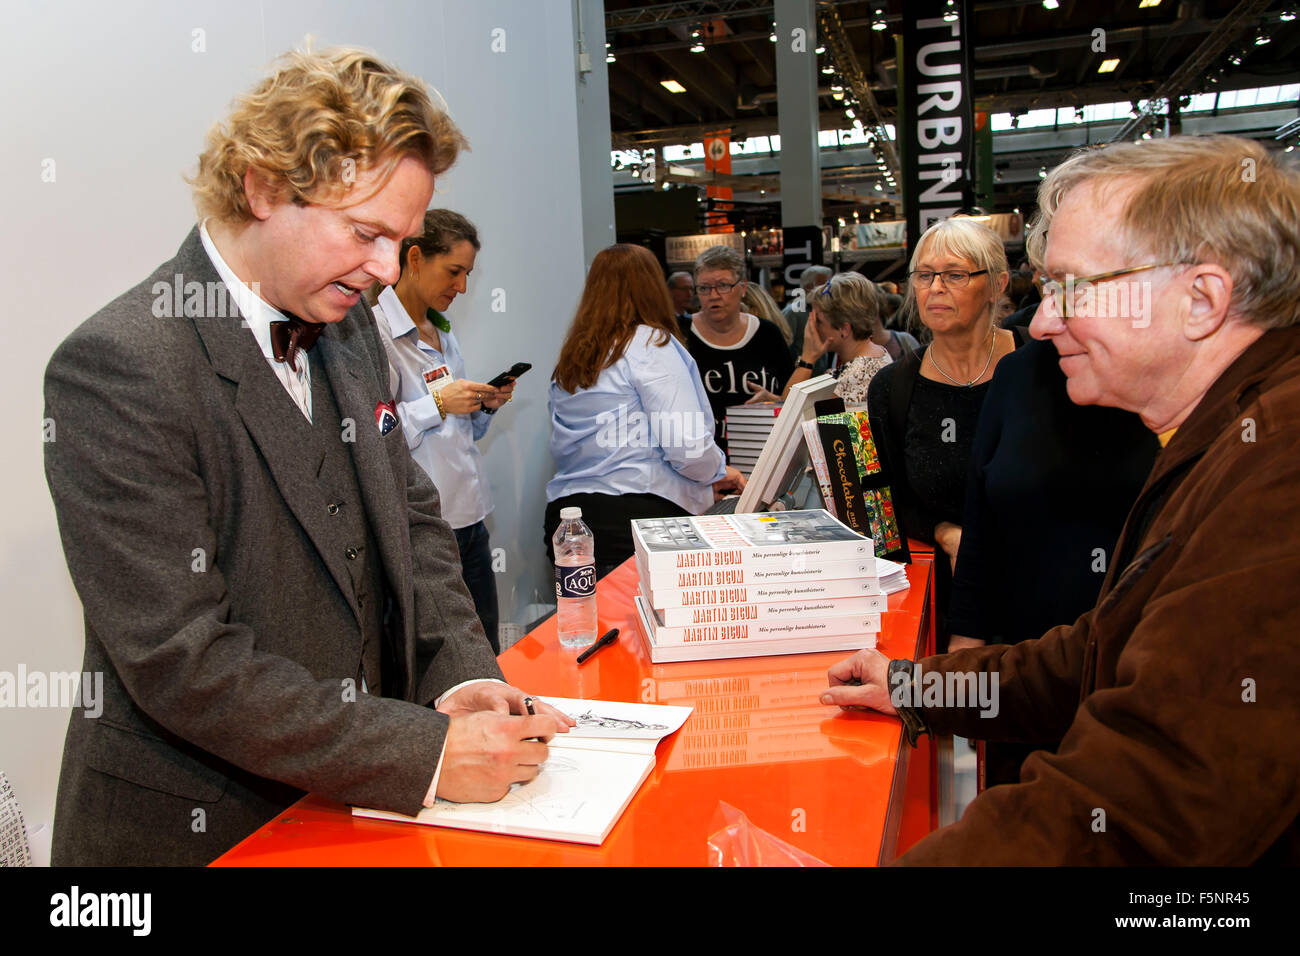 Kopenhagen, Dänemark, 7. November 2015. Autor Martin Bigum unterzeichnen sein neues Kunstbuch für Fans bei Kopenhagen Buchmesse. Bildnachweis: OJPHOTOS/Alamy Live-Nachrichten Stockfoto